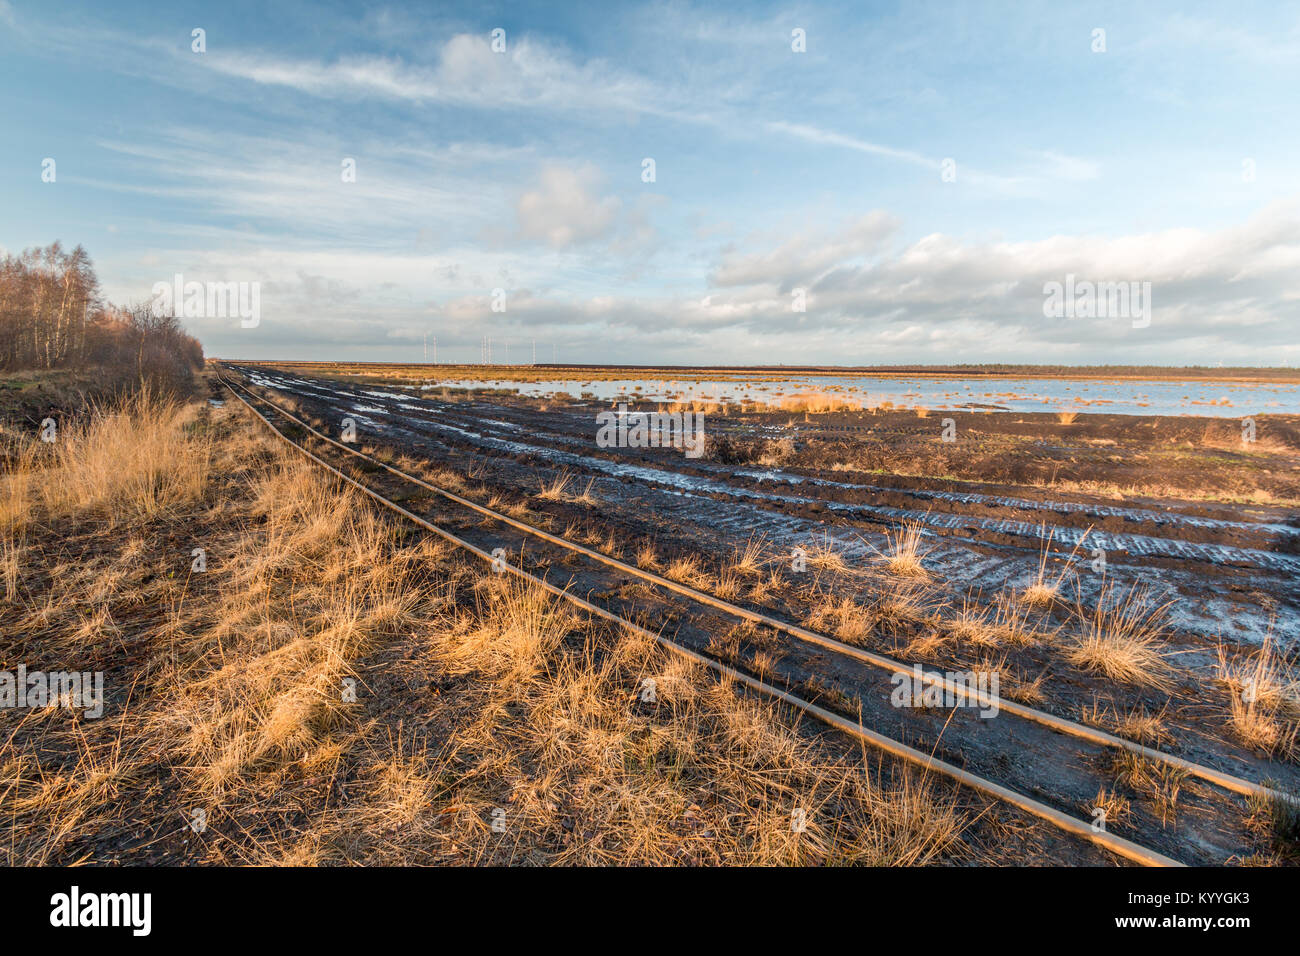 Paesaggio girato di una torba area mineraria con i binari di una ferrovia di torba Foto Stock